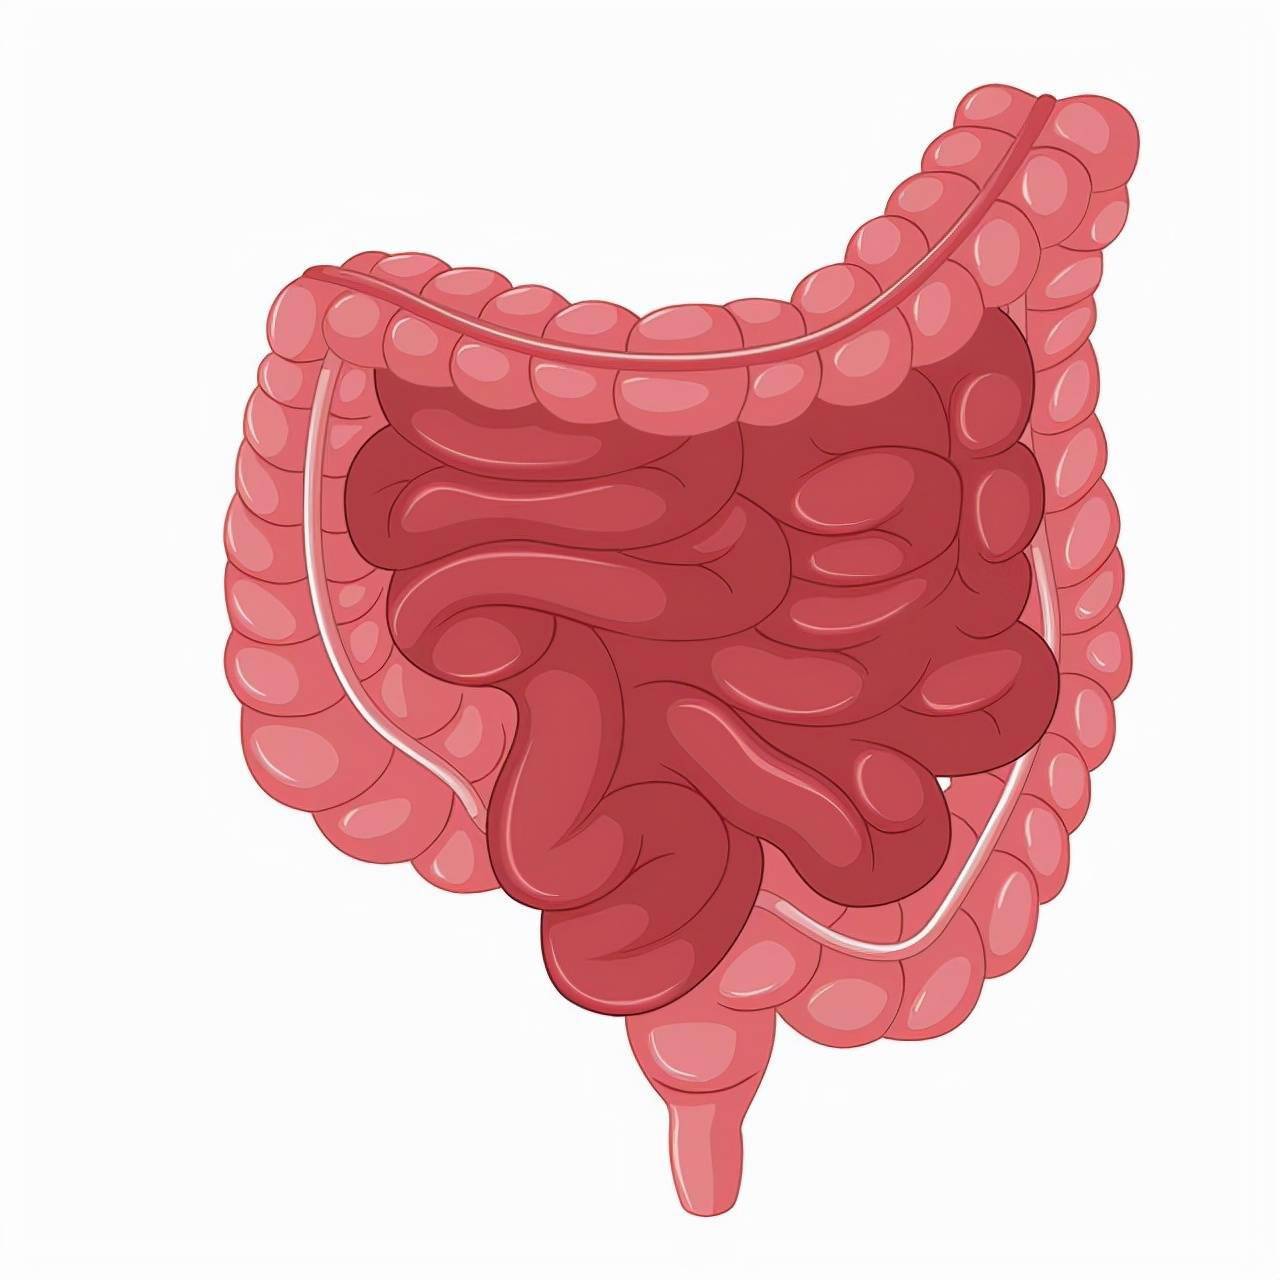 肠道癌肿逐渐增大,可部分或完全阻塞肠腔,产生不完全性或完全性肠